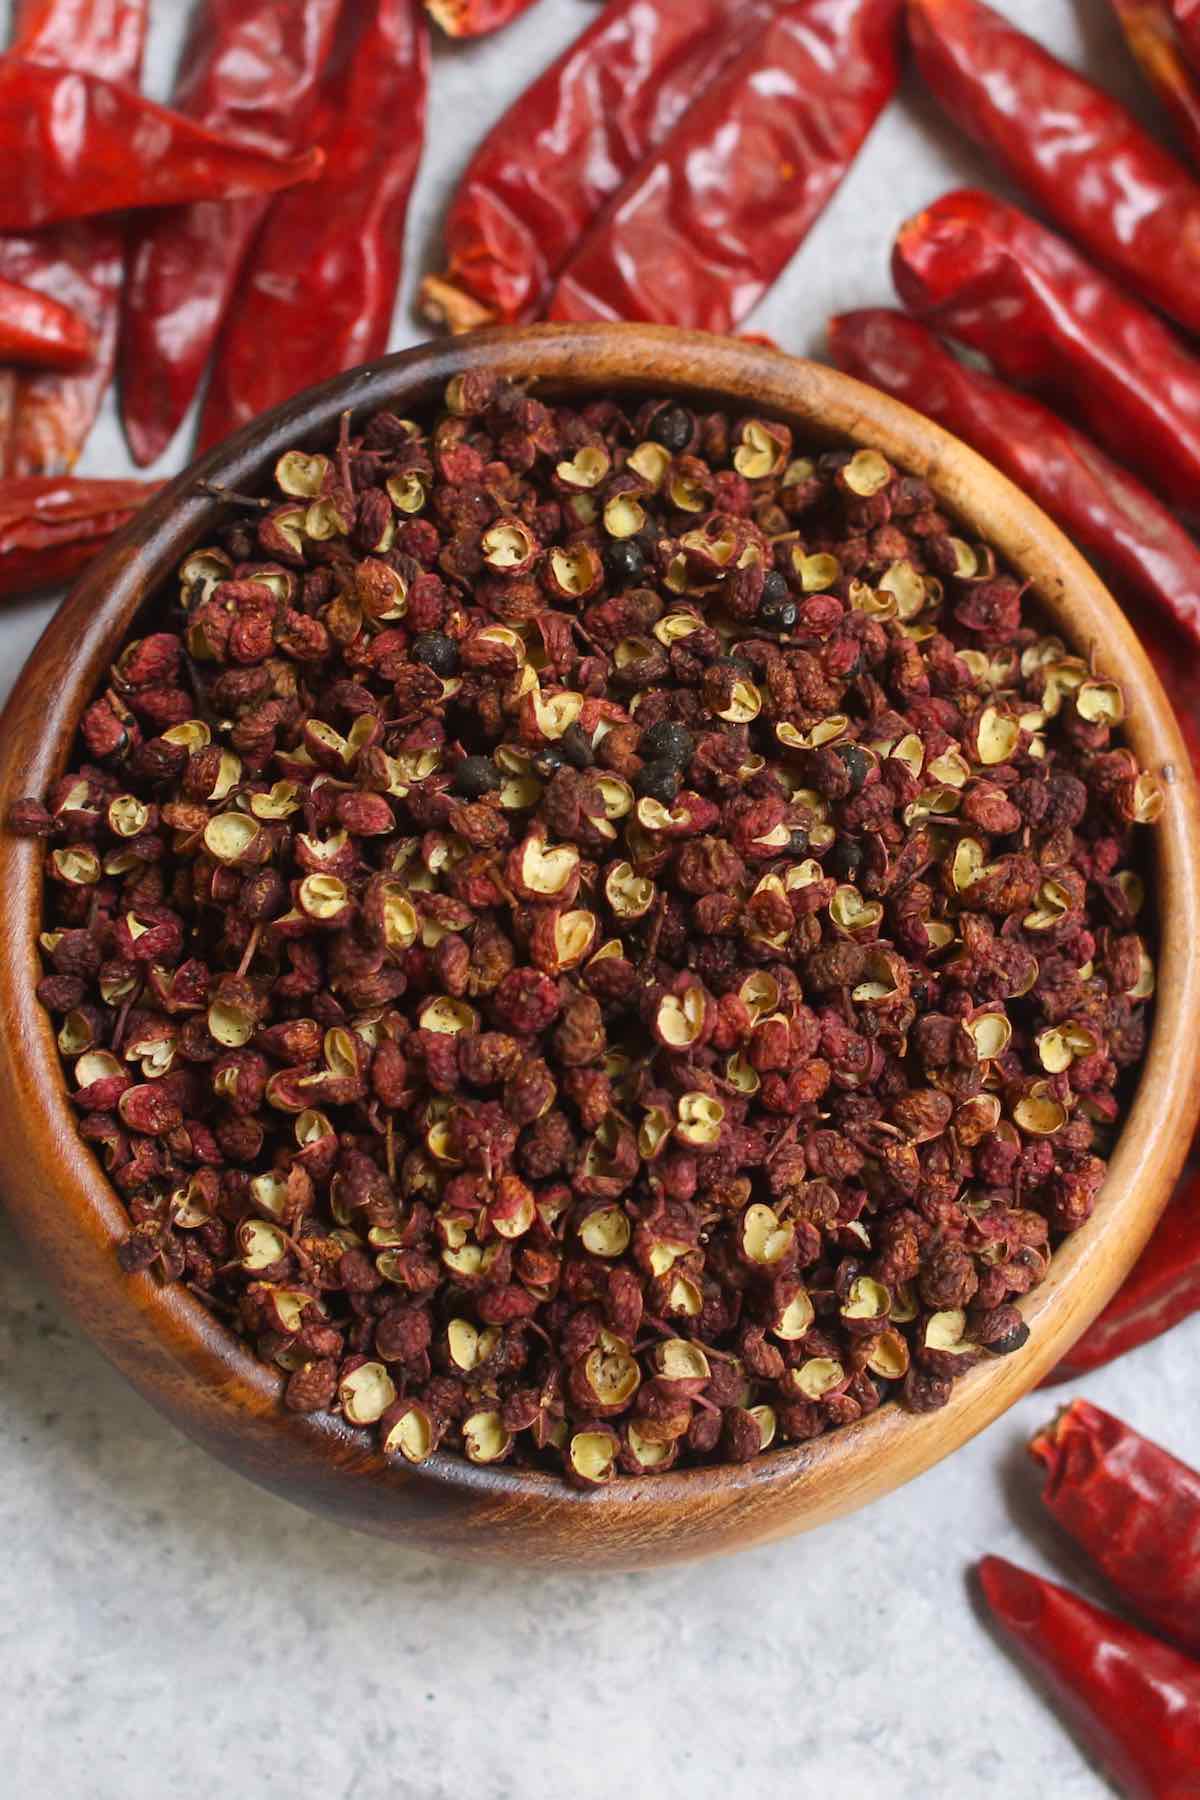 Szechuan peppercorns in a wooden bowl.